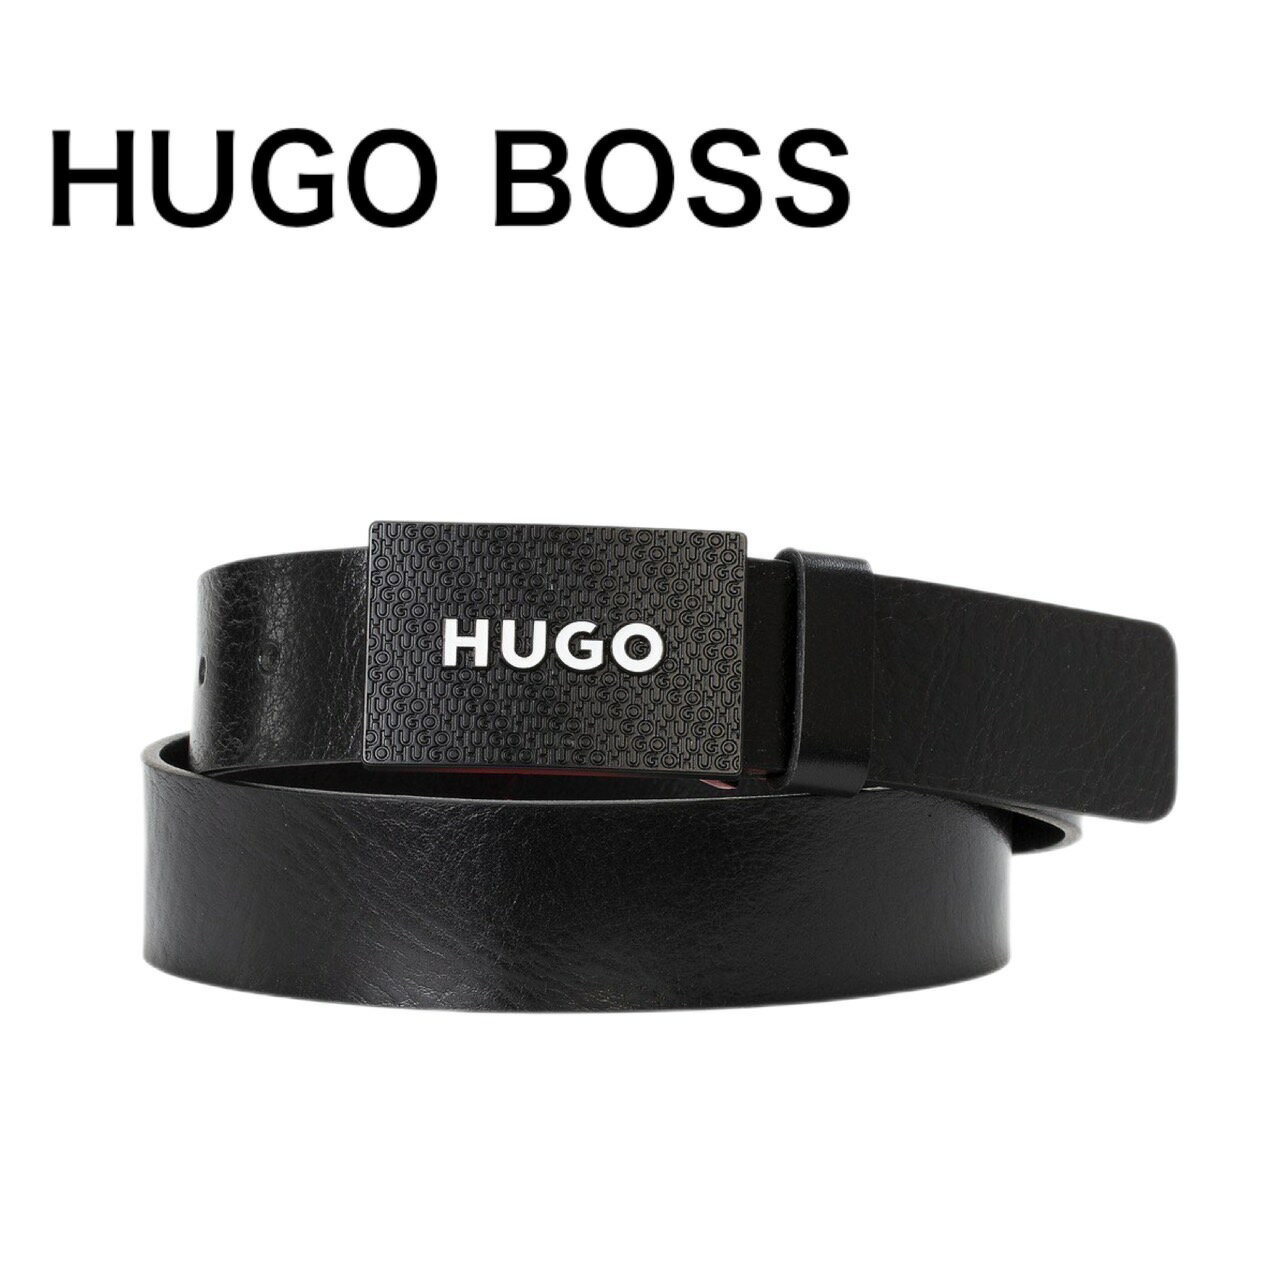 ボスヒューゴボス HUGO BOSS ヒューゴボス メンズ ベルト ロゴ 正規品 ブランド Gilao 本革 サイズ調節 プレゼント ギフト 高級感 ビジネス ファッション